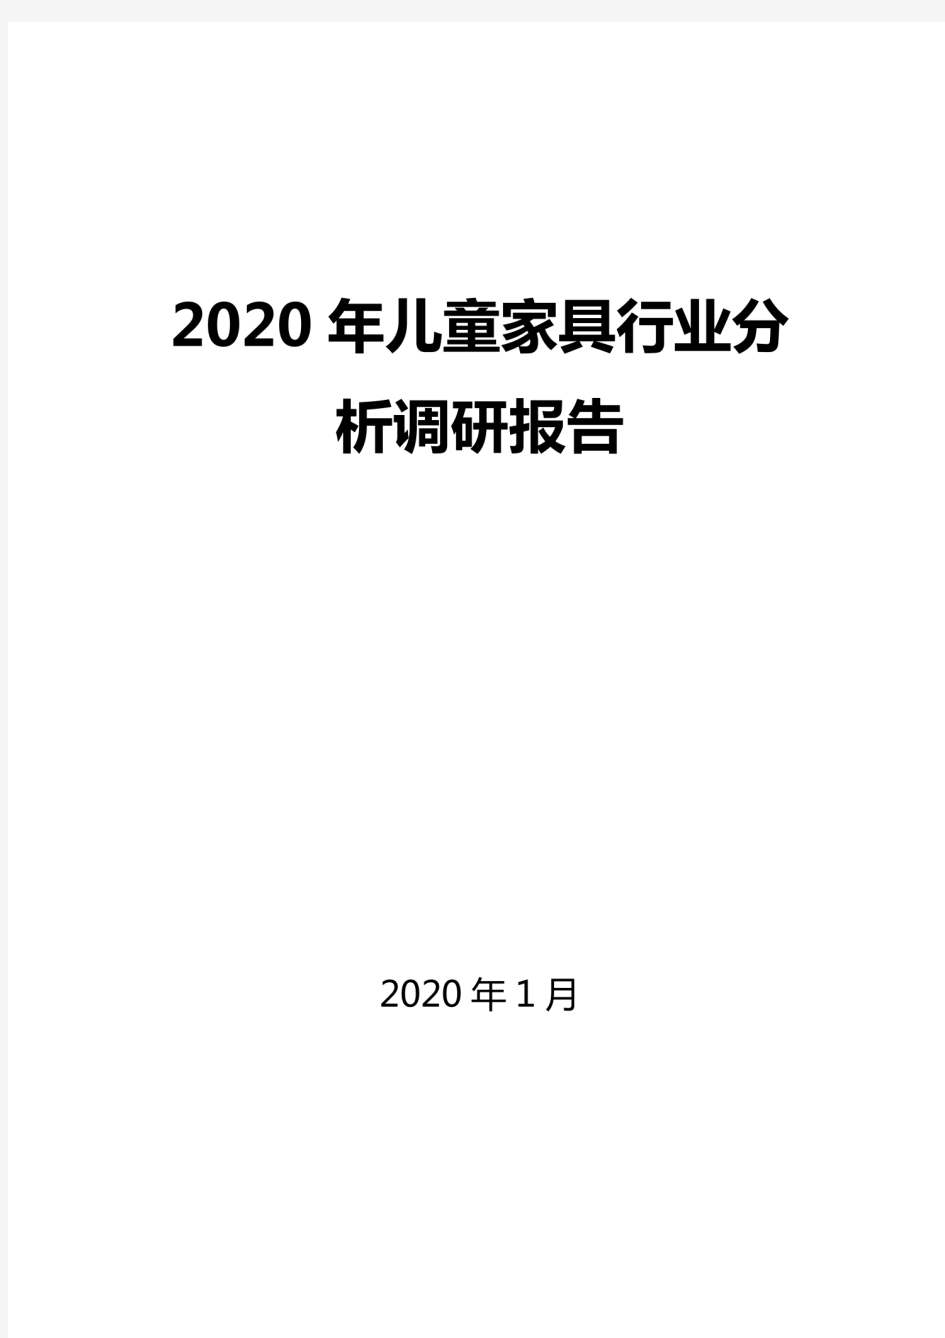 2020儿童家具行业分析调研报告